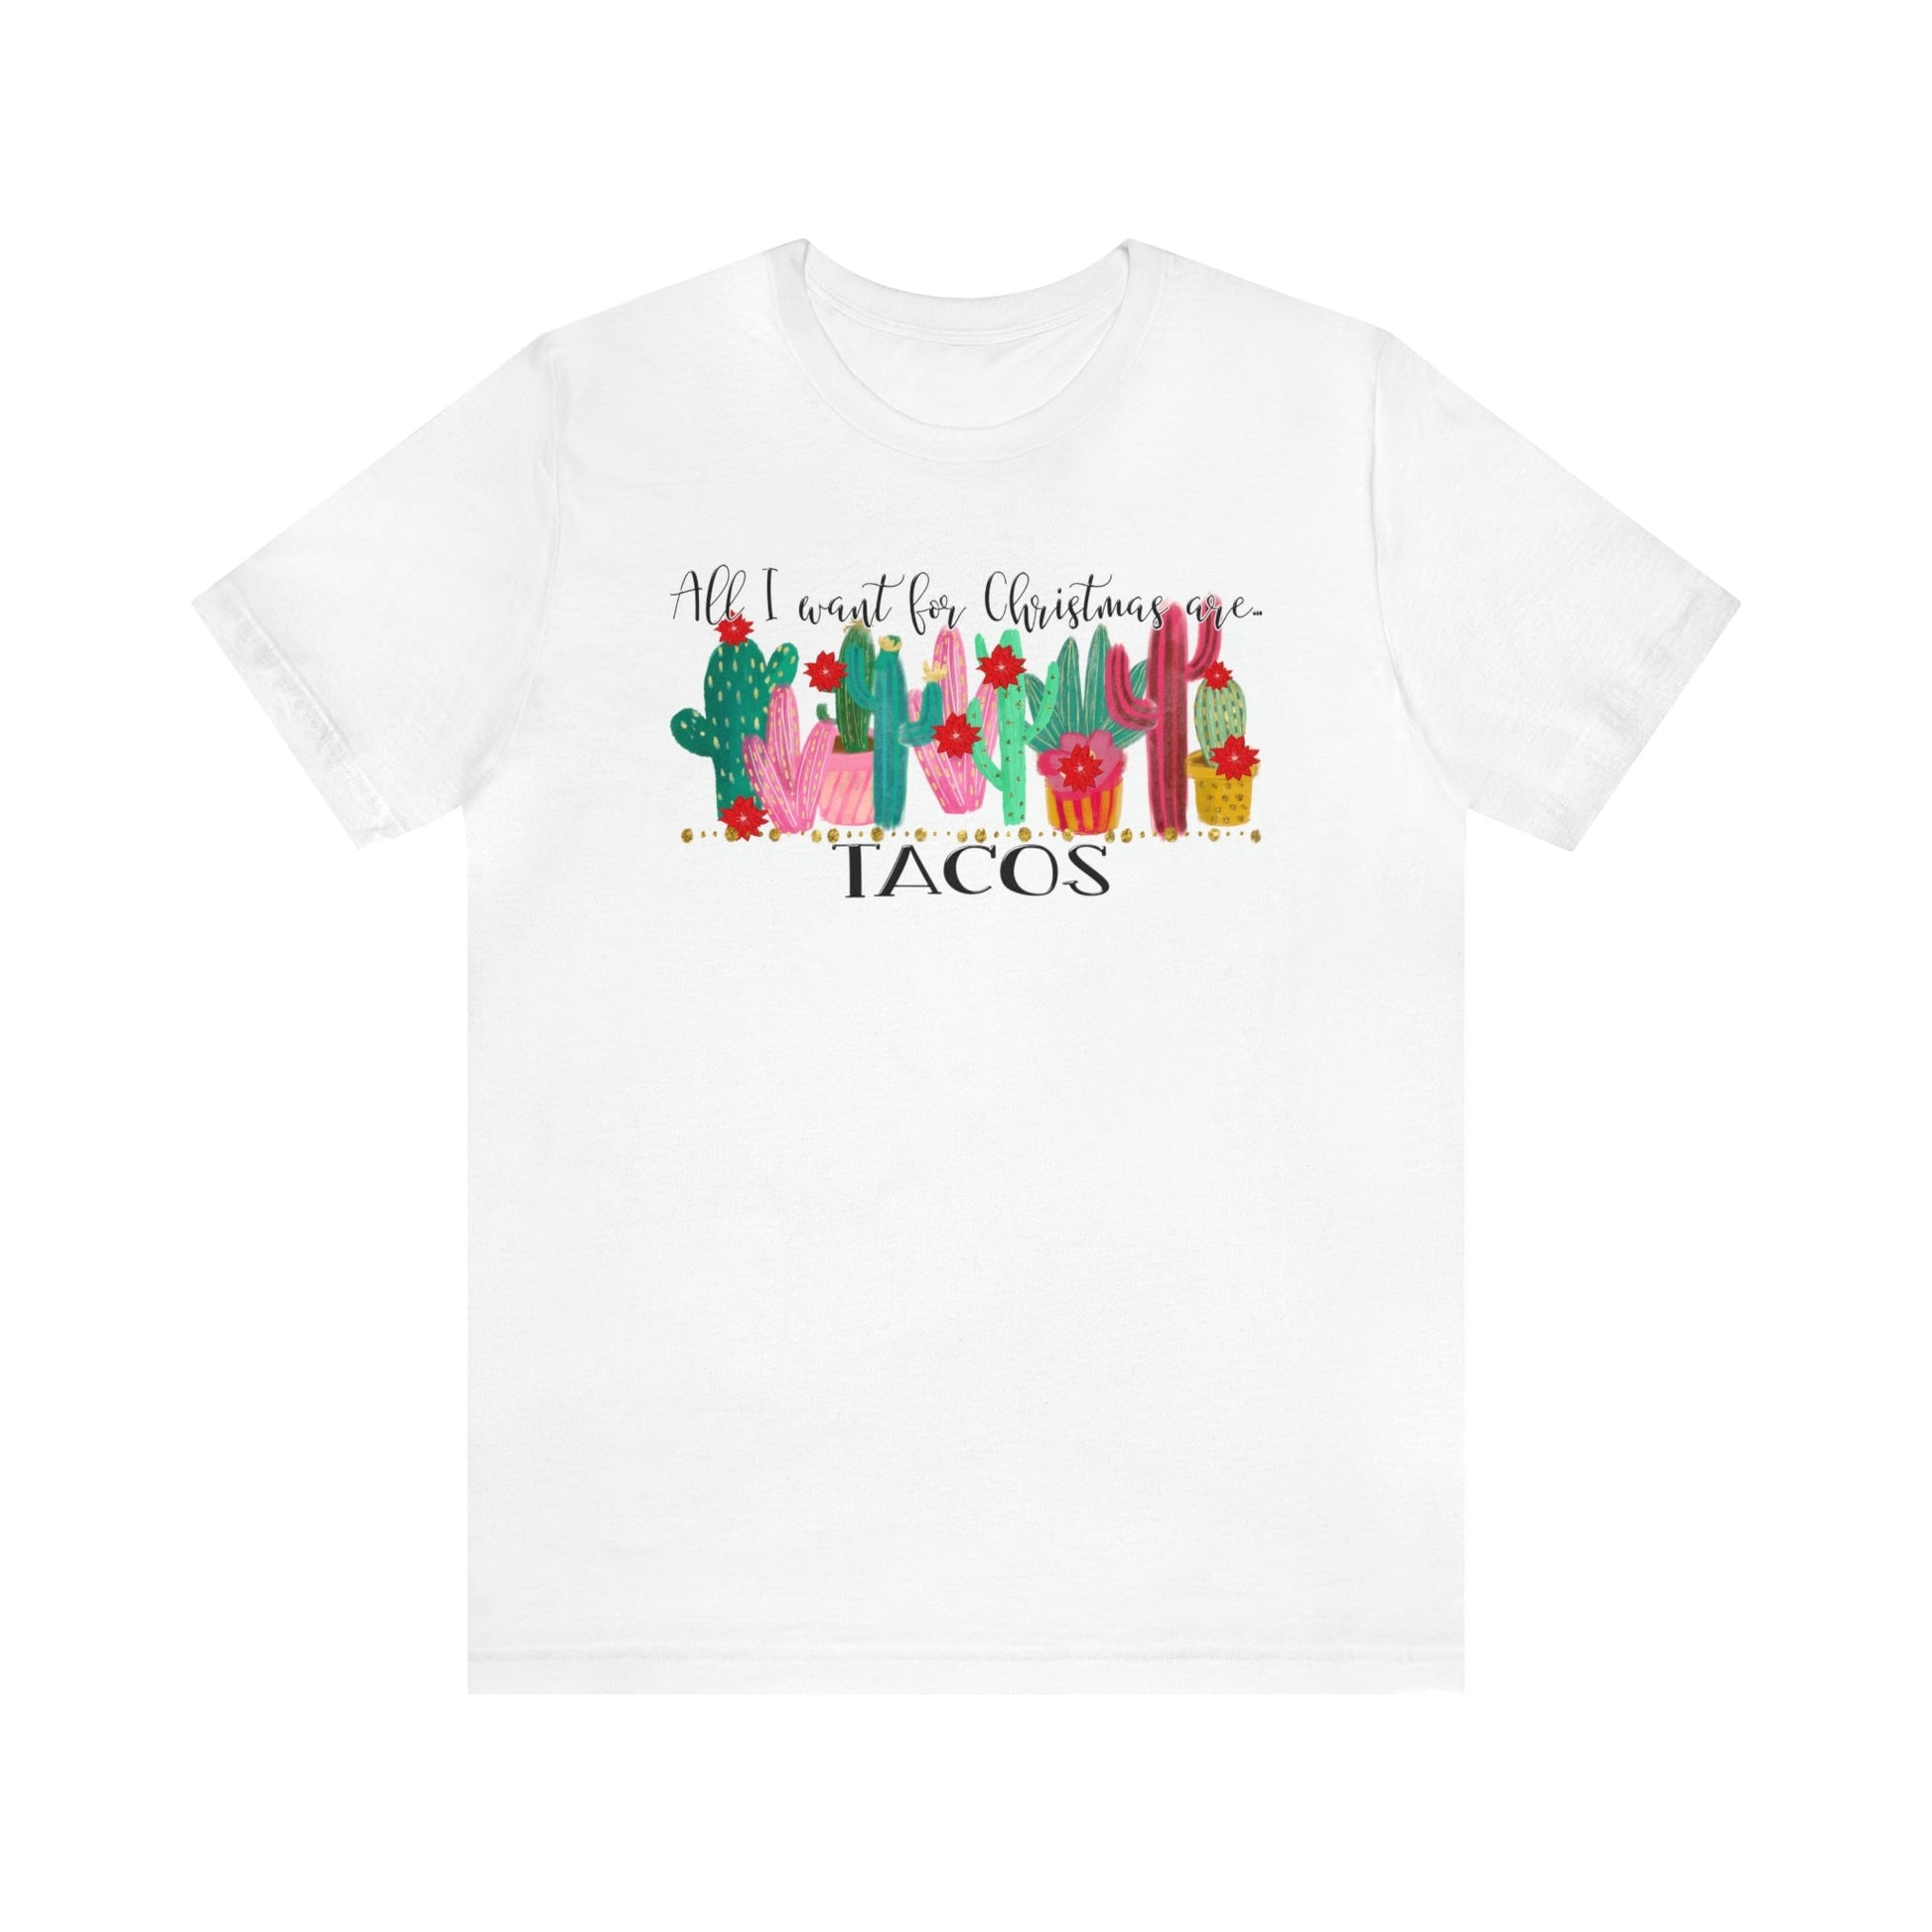 Tacos for Christmas Short Sleeve Tee - numonet